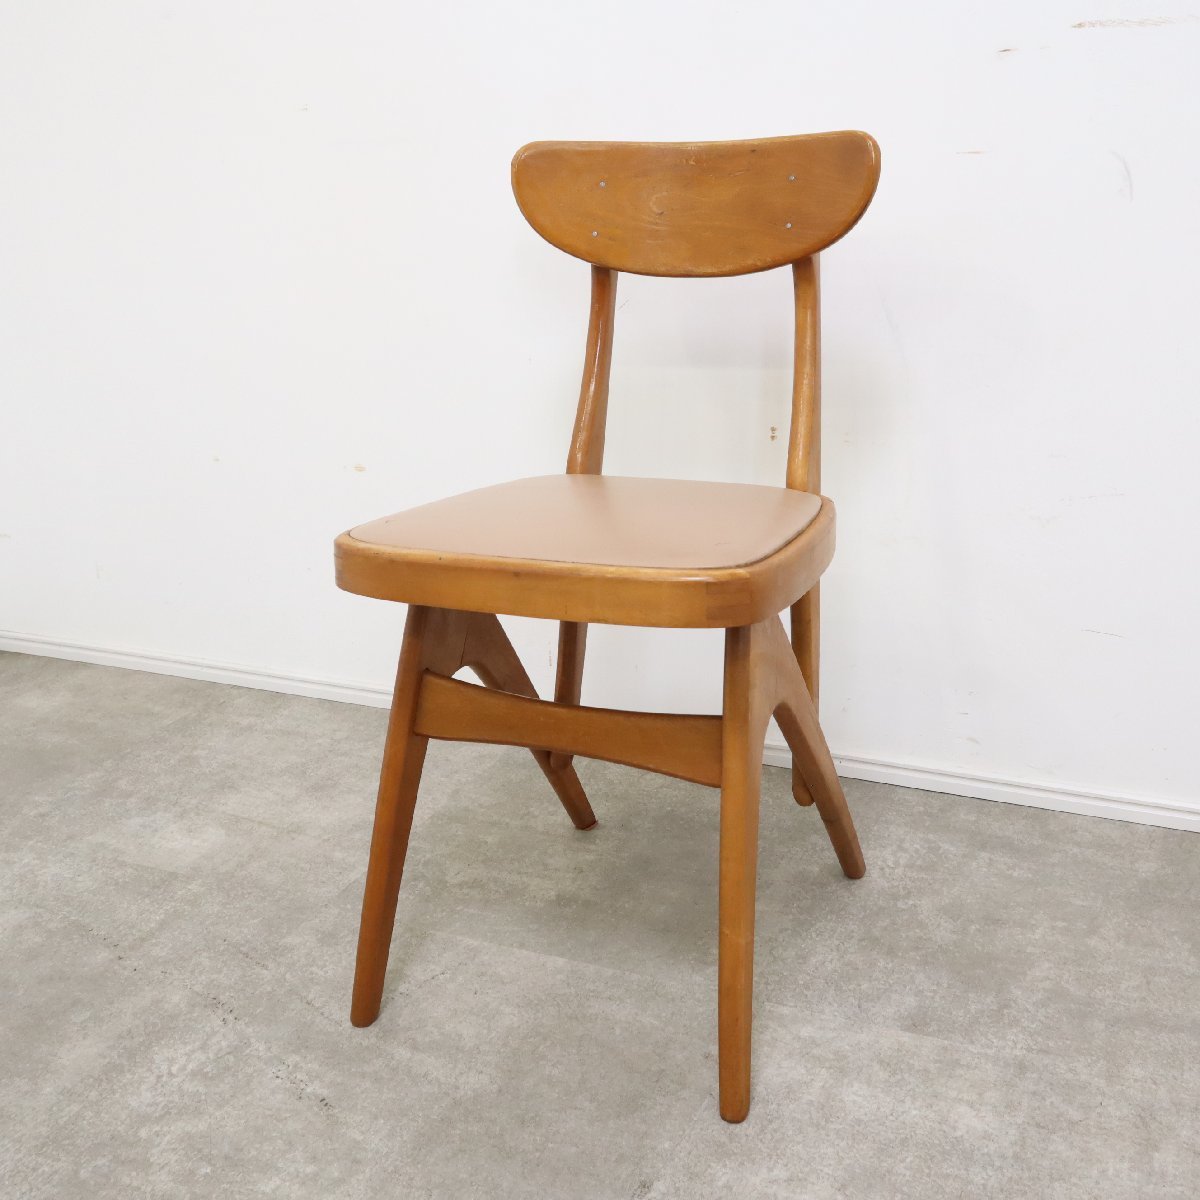 maruni オールドマルニ ヴィンテージチェア 木製椅子 デルタチェア ビニールレザー ダイニングチェア【08A2307070】